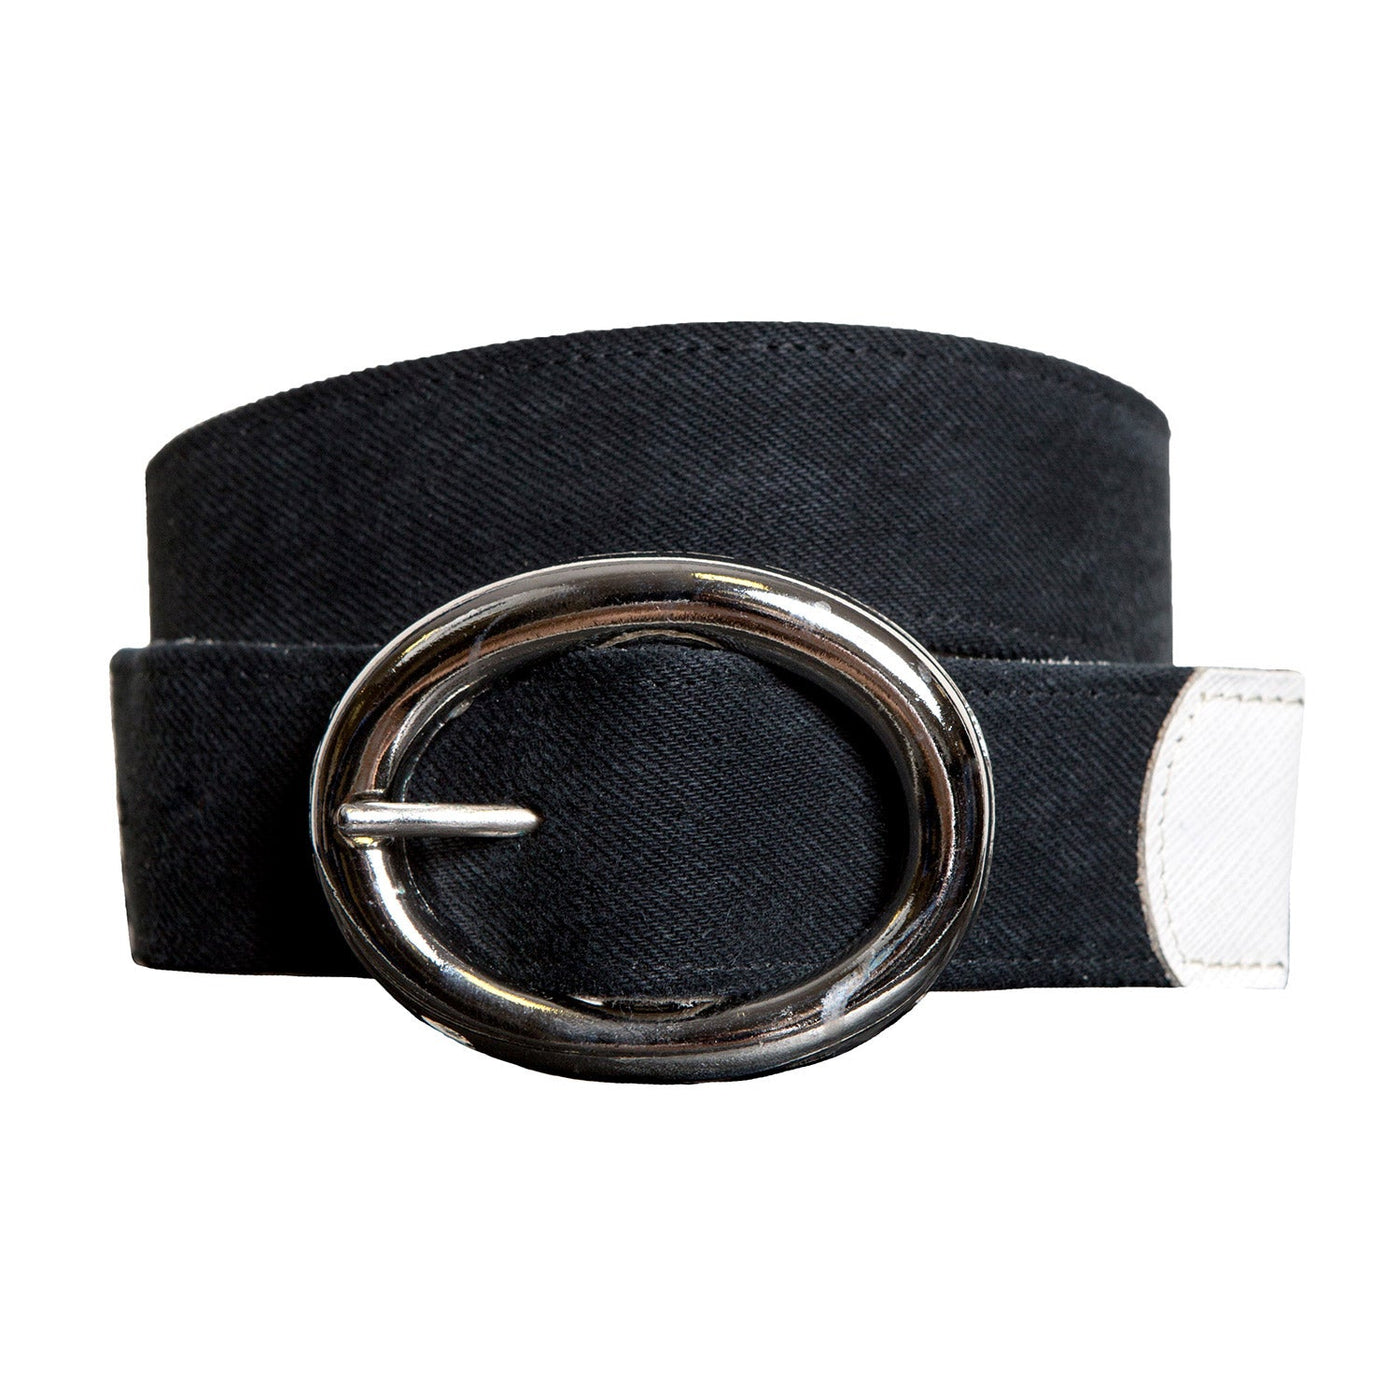 Black Denim Belt with Silver Buckle - E.L.V. Denim